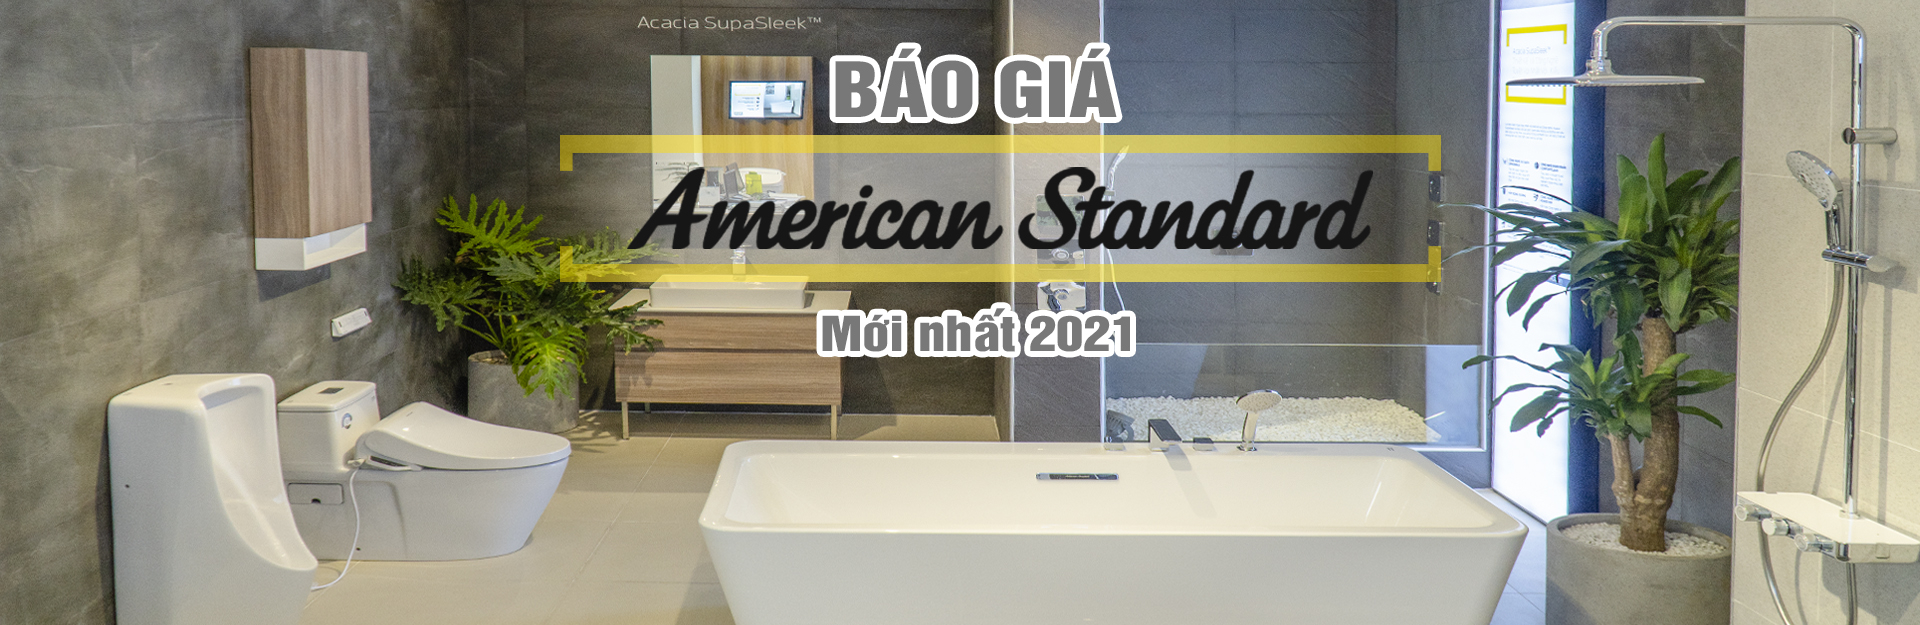 Bảng giá thiết bị vệ sinh American Standard mới nhất 2021